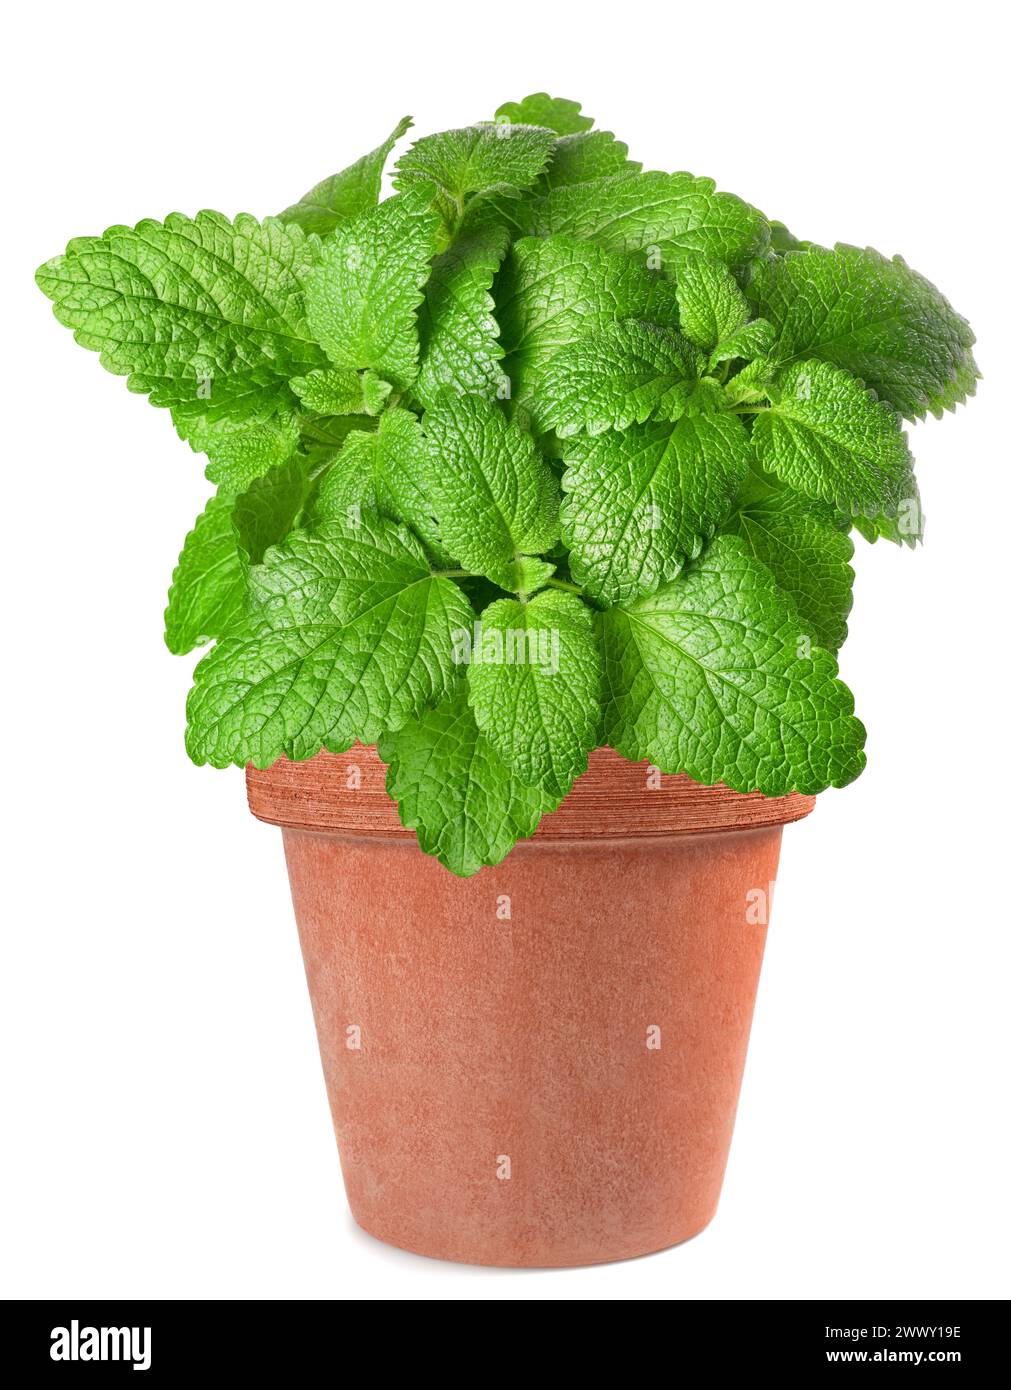 Lemon balm plant in vase  isolated on white background Stock Photo